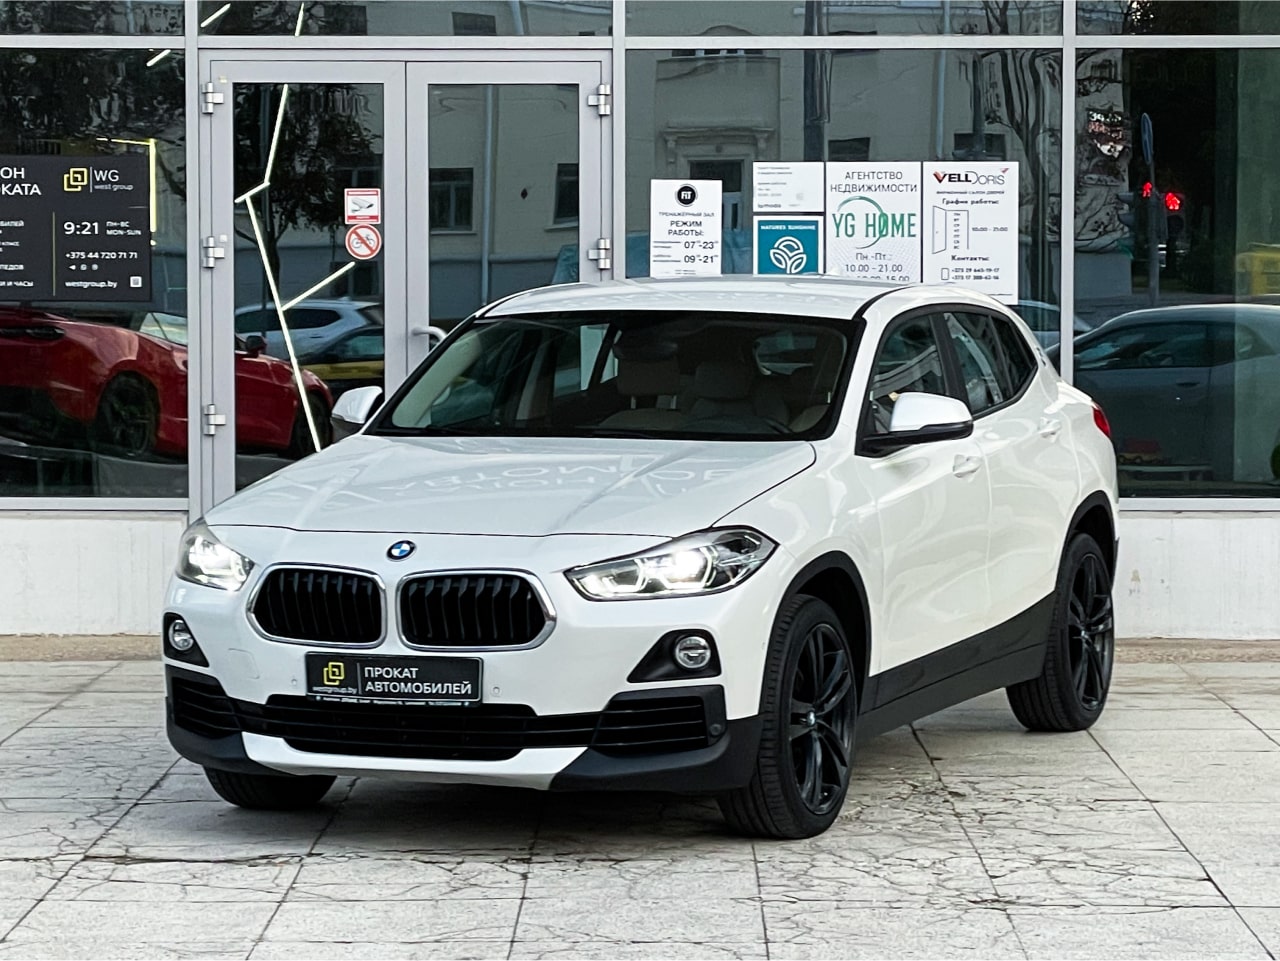 Аренда  BMW X2 sDrive 18i  6 класса 2018-2022 года в городе Минск от 64 $/сутки,  двигатель: Бензин , объем 1.8 литров, КАСКО (Мультидрайв), без водителя, вид 1 - West Group